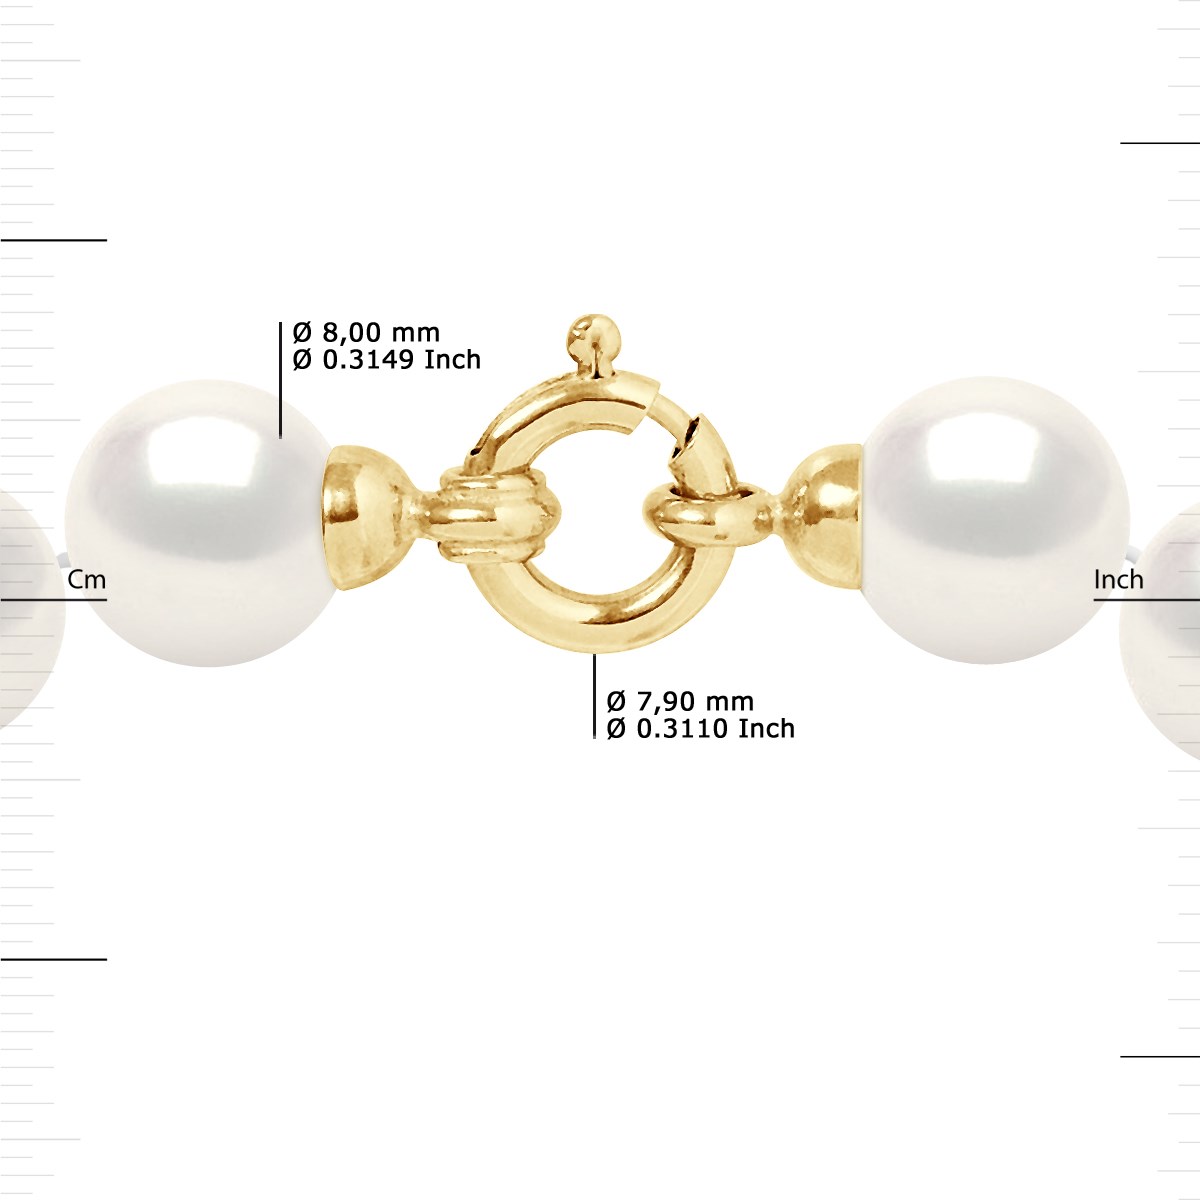 Collier Rang 'Princesse' - Véritables Perles de Culture d'Eau Douce Rondes 8-9 mm - Blanc Naturel - Or Jaune 750 Millièmes - vue 3